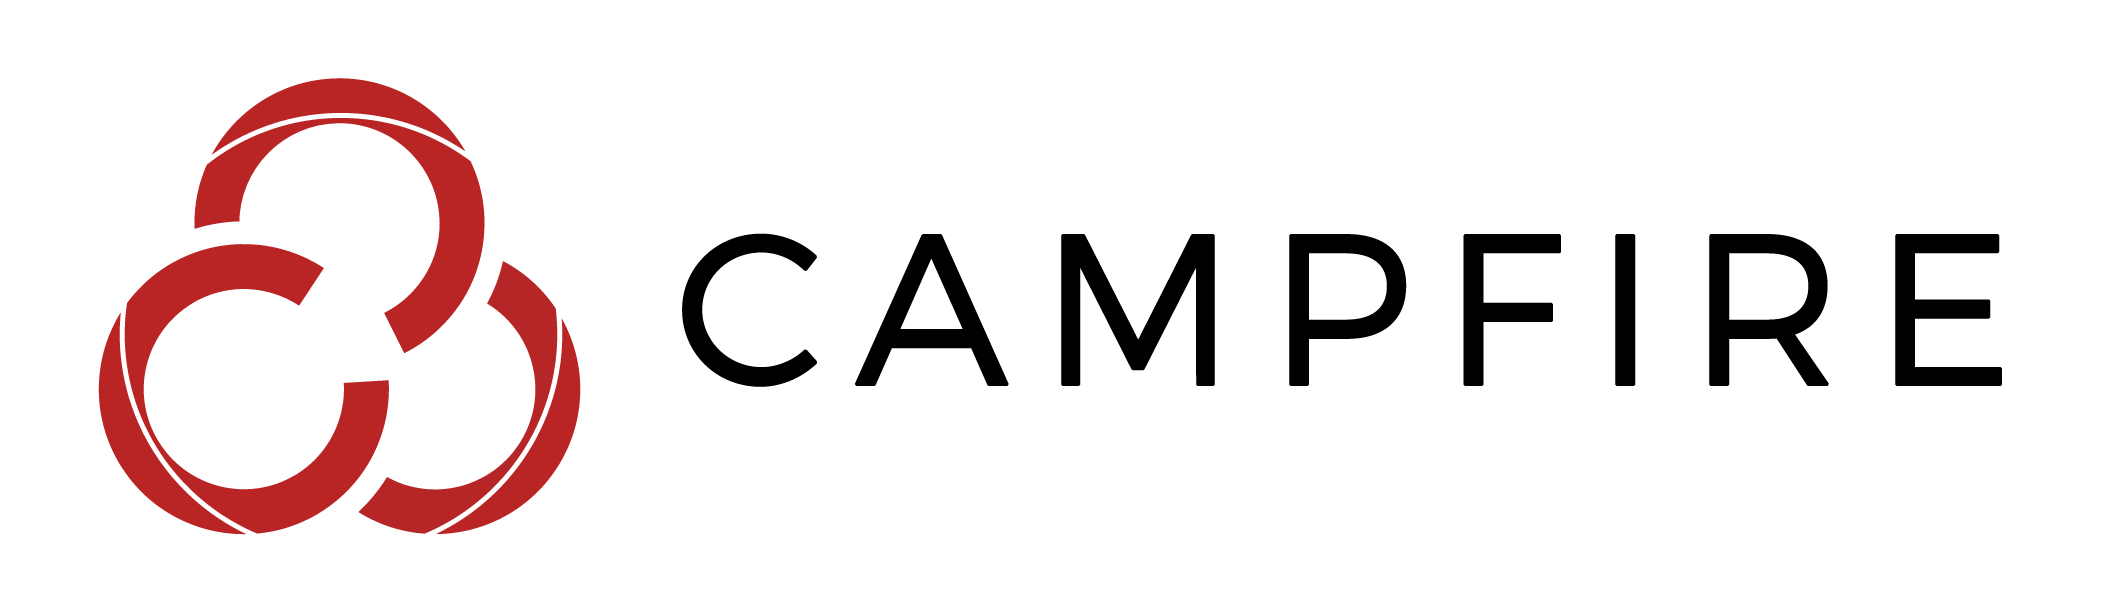 Campfire Logo - campfire-logo-white - OWN Academy